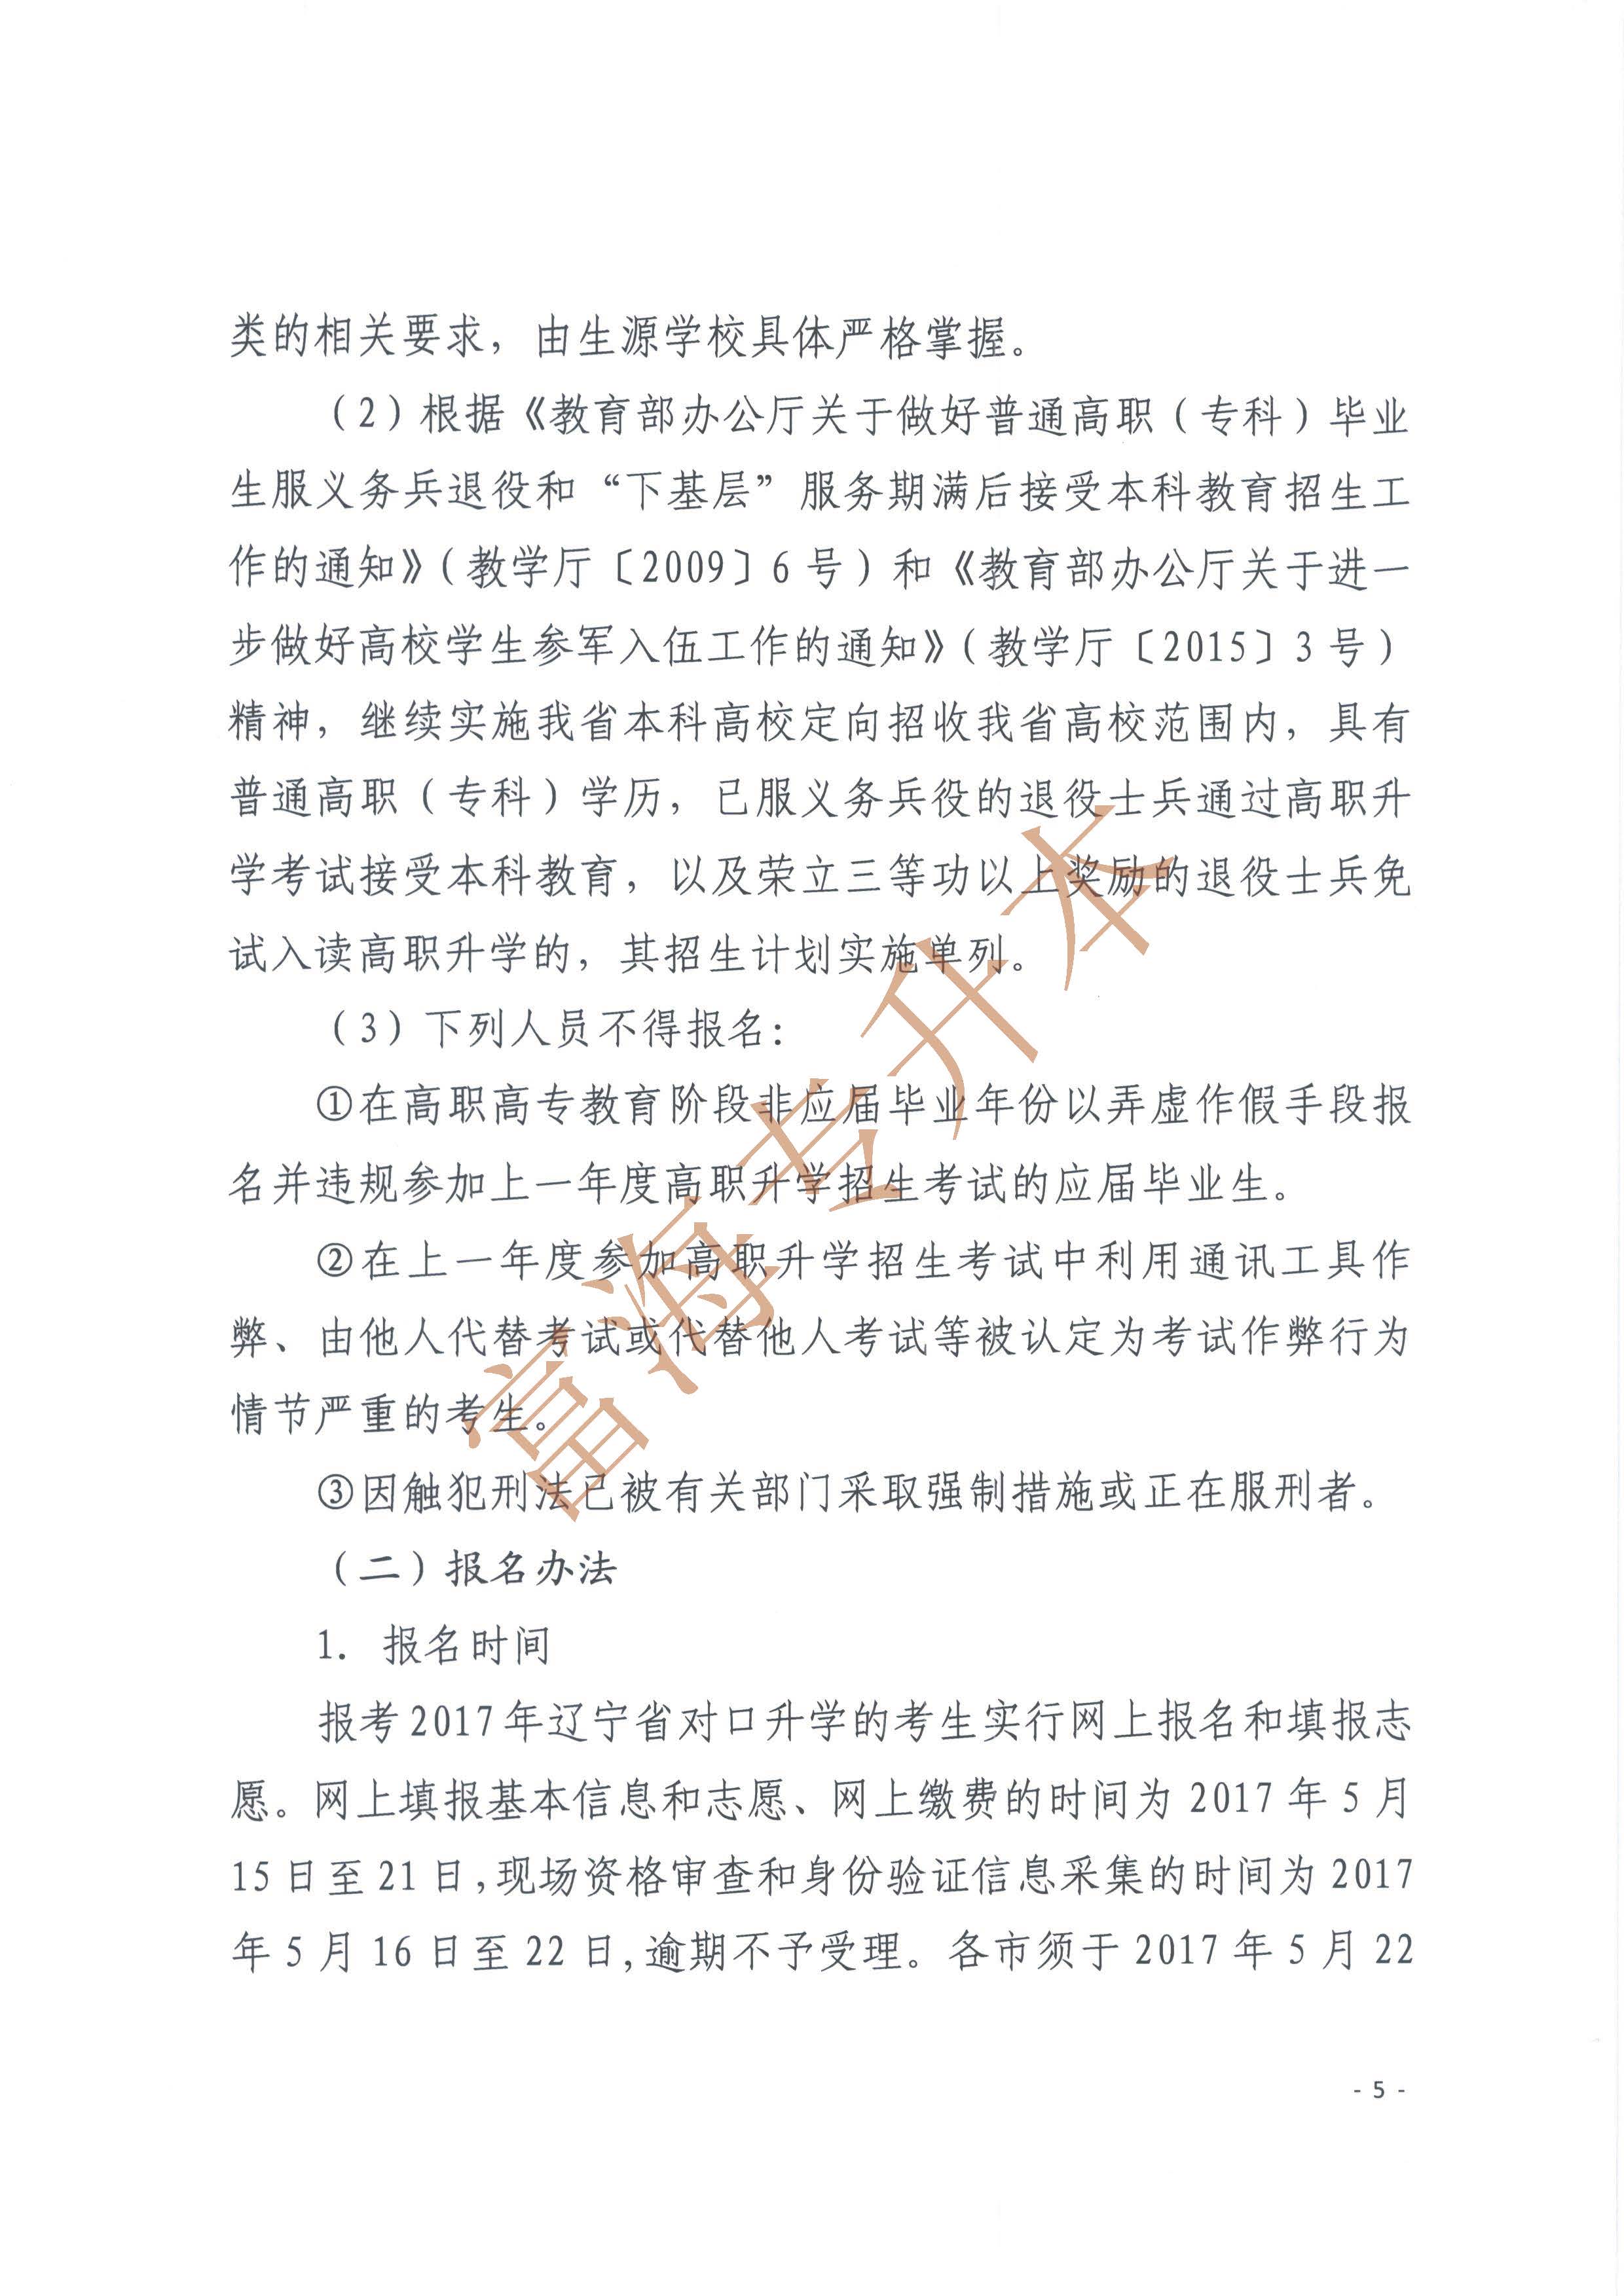 辽宁省2017年职业教育对口升学考试招生工作实施办法的通知5